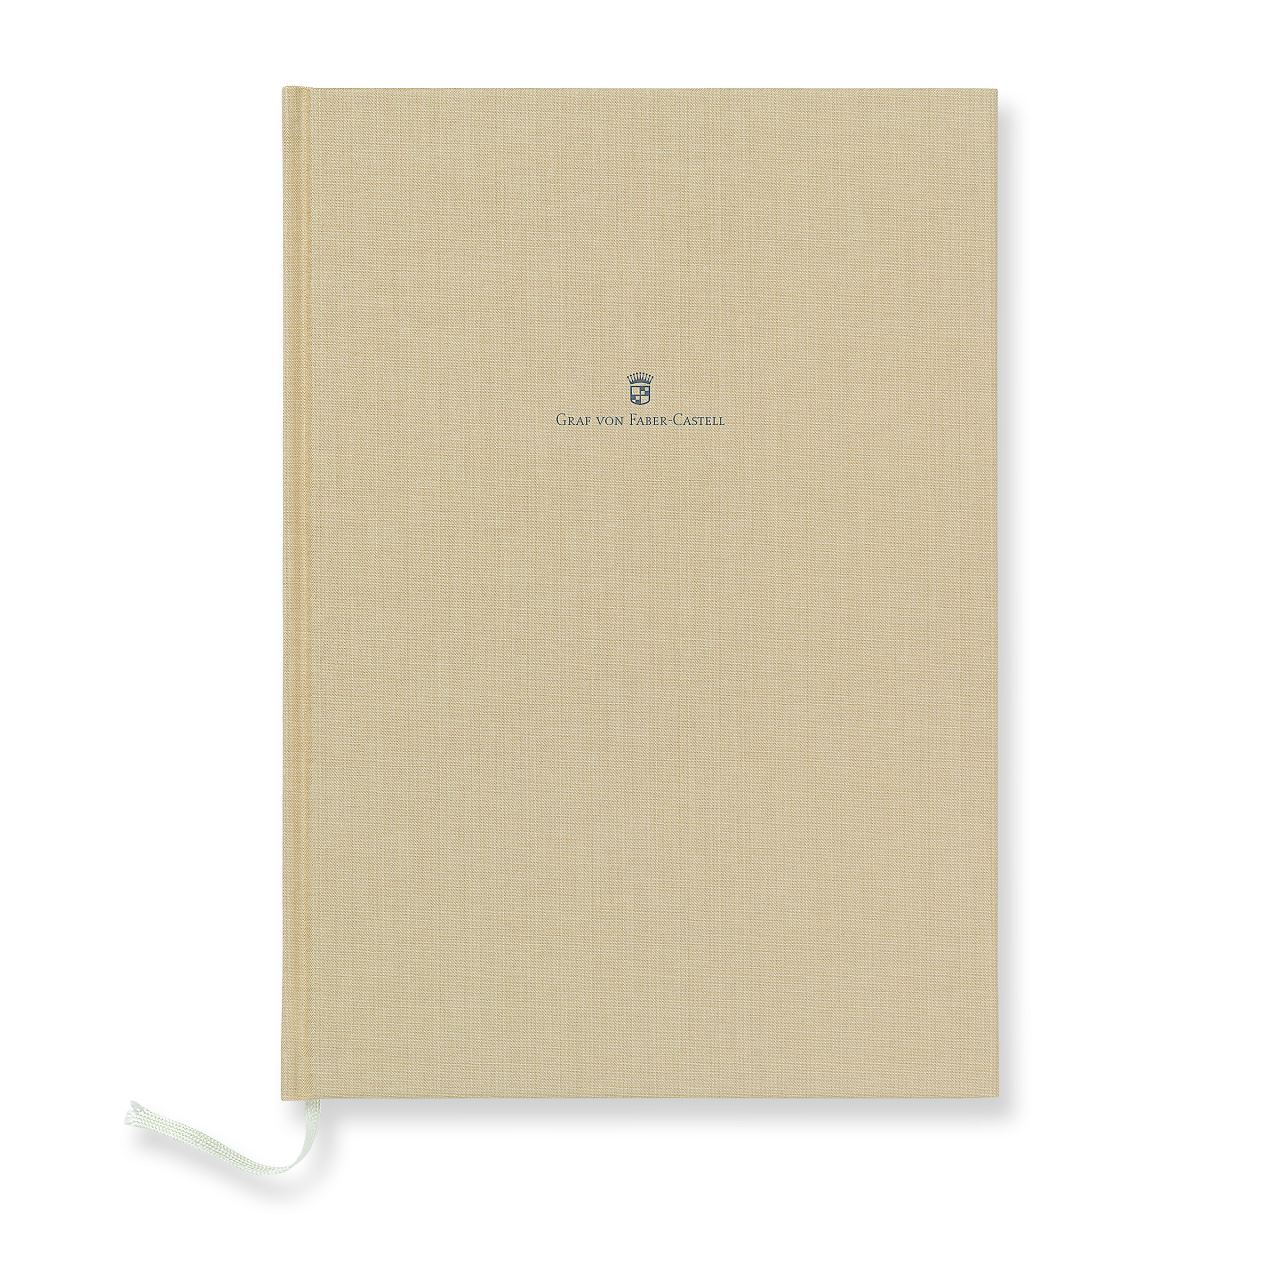 Graf-von-Faber-Castell - Linen-bound book A4 Golden Brown